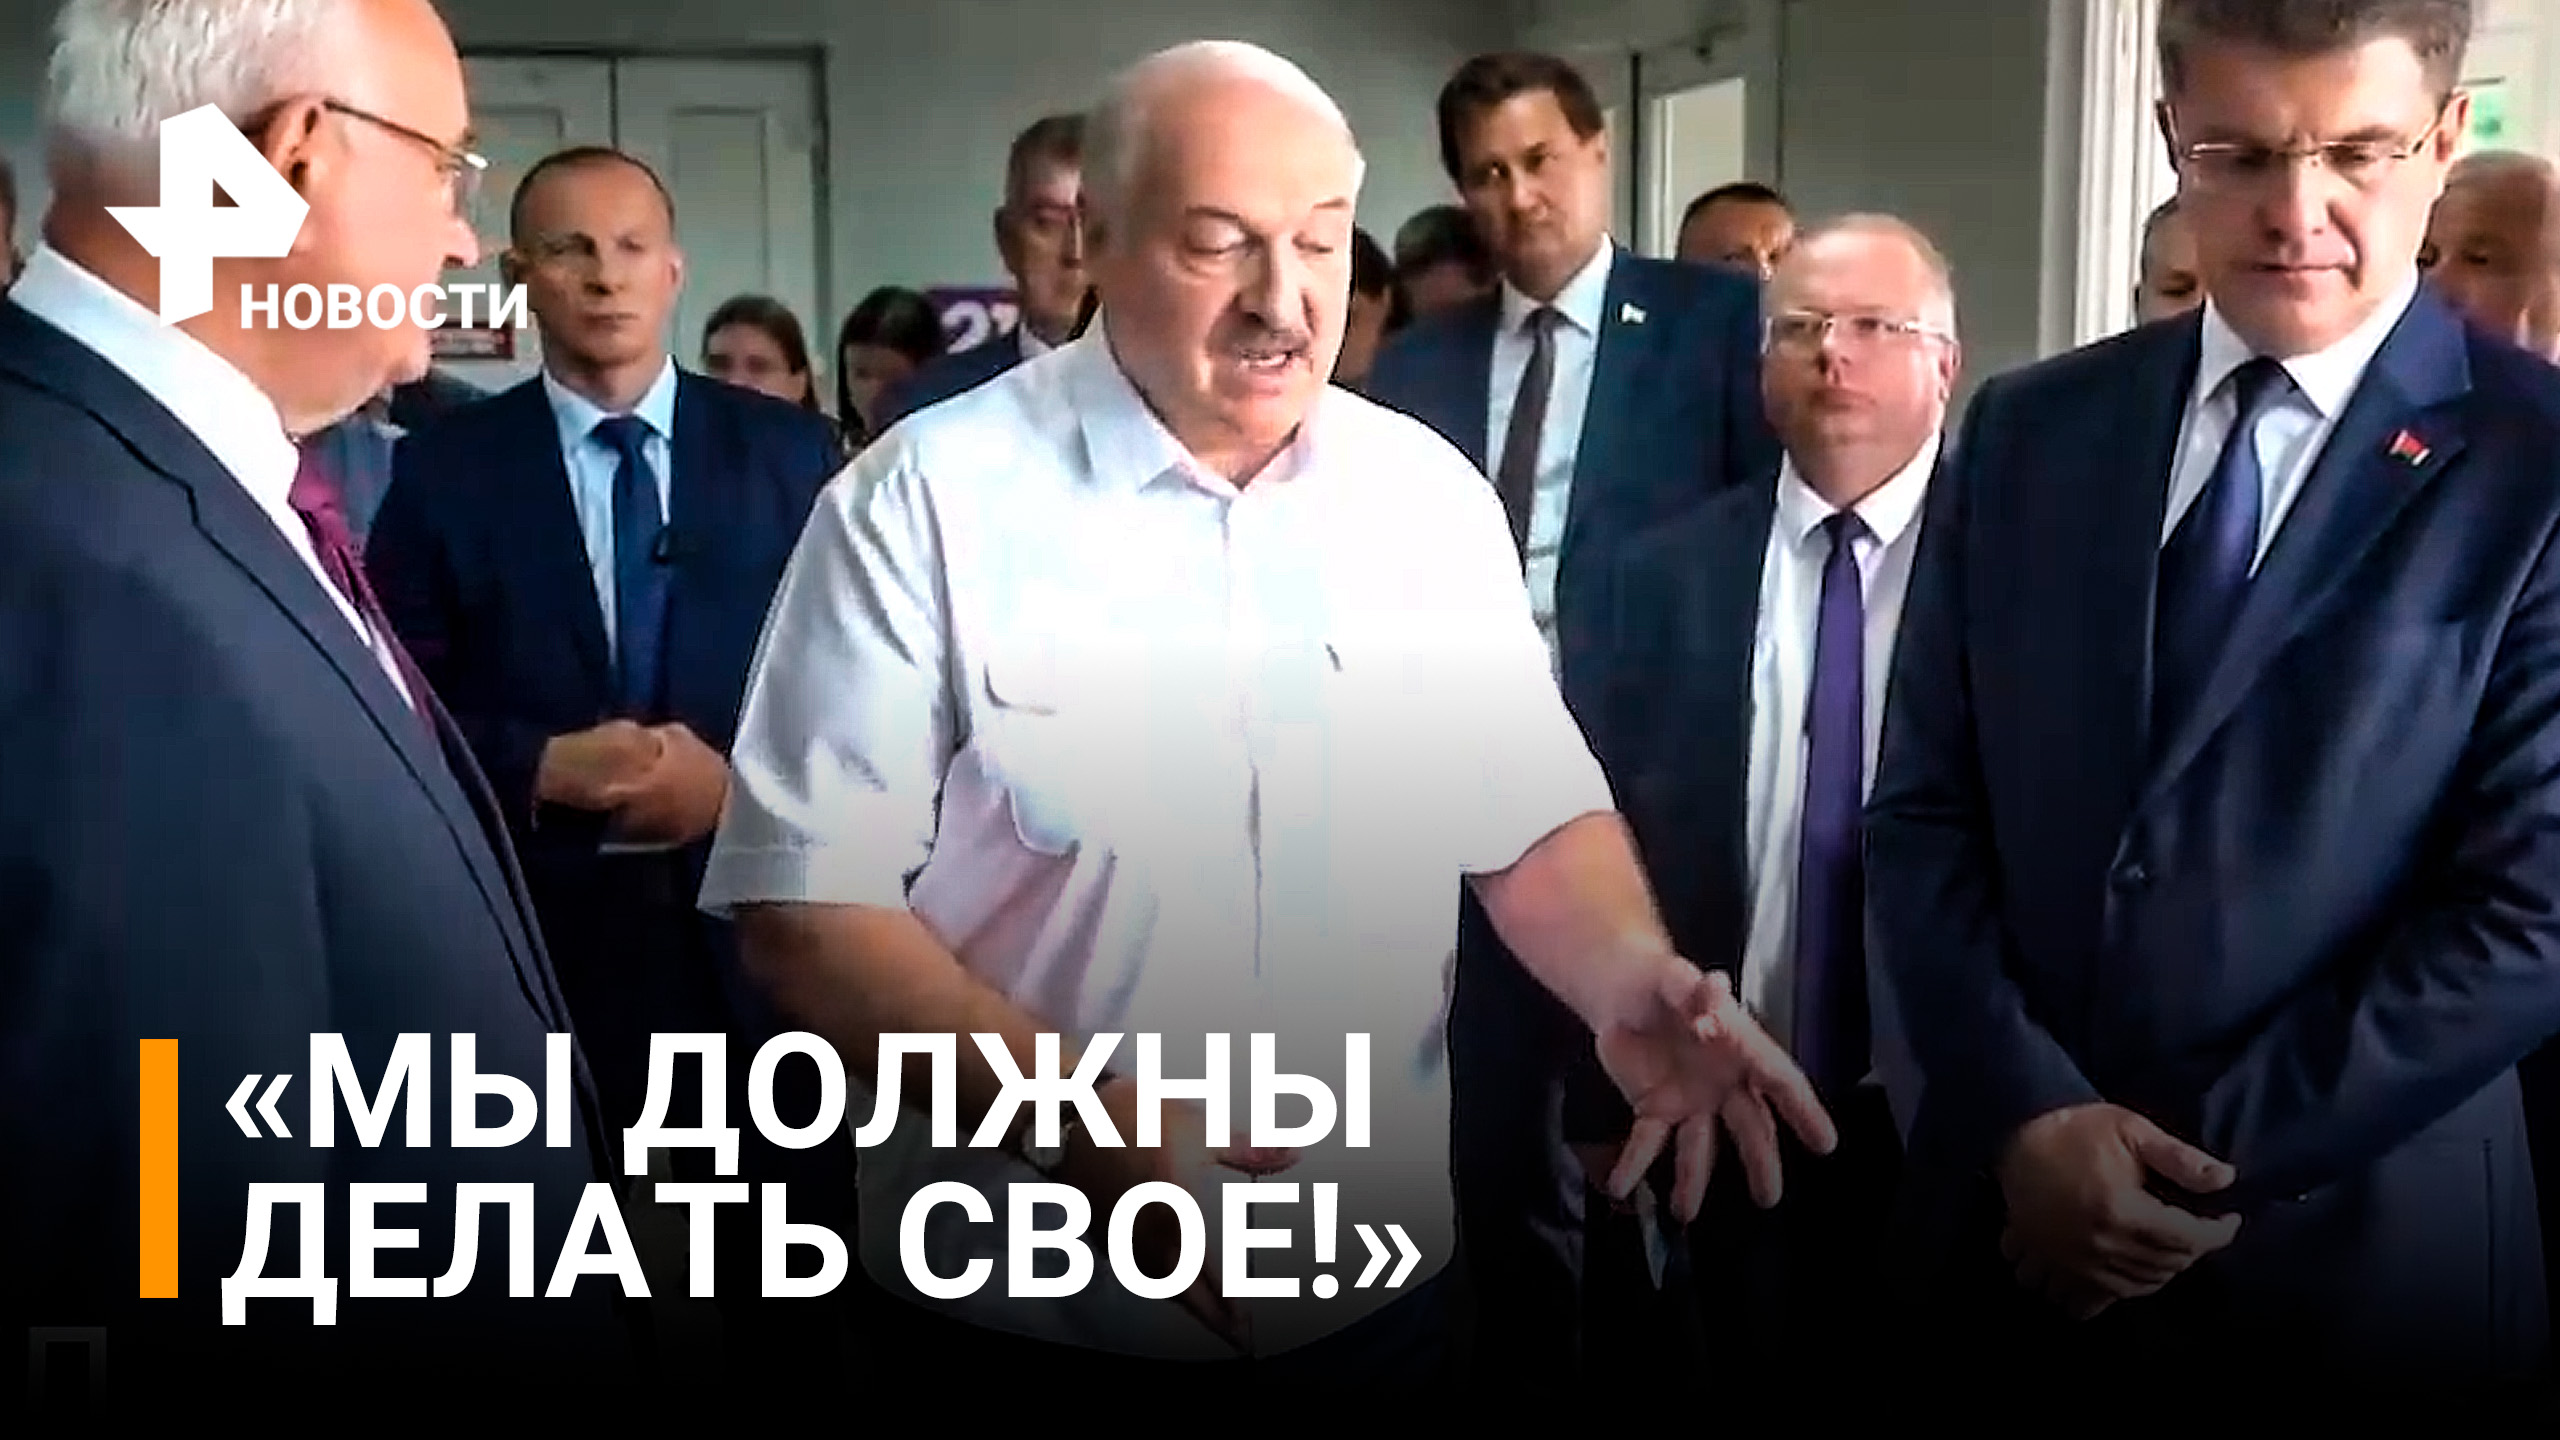 Лукашенко решил узнать, что в мотоцикле "Минск" свое. Ответ удивил / РЕН Новости